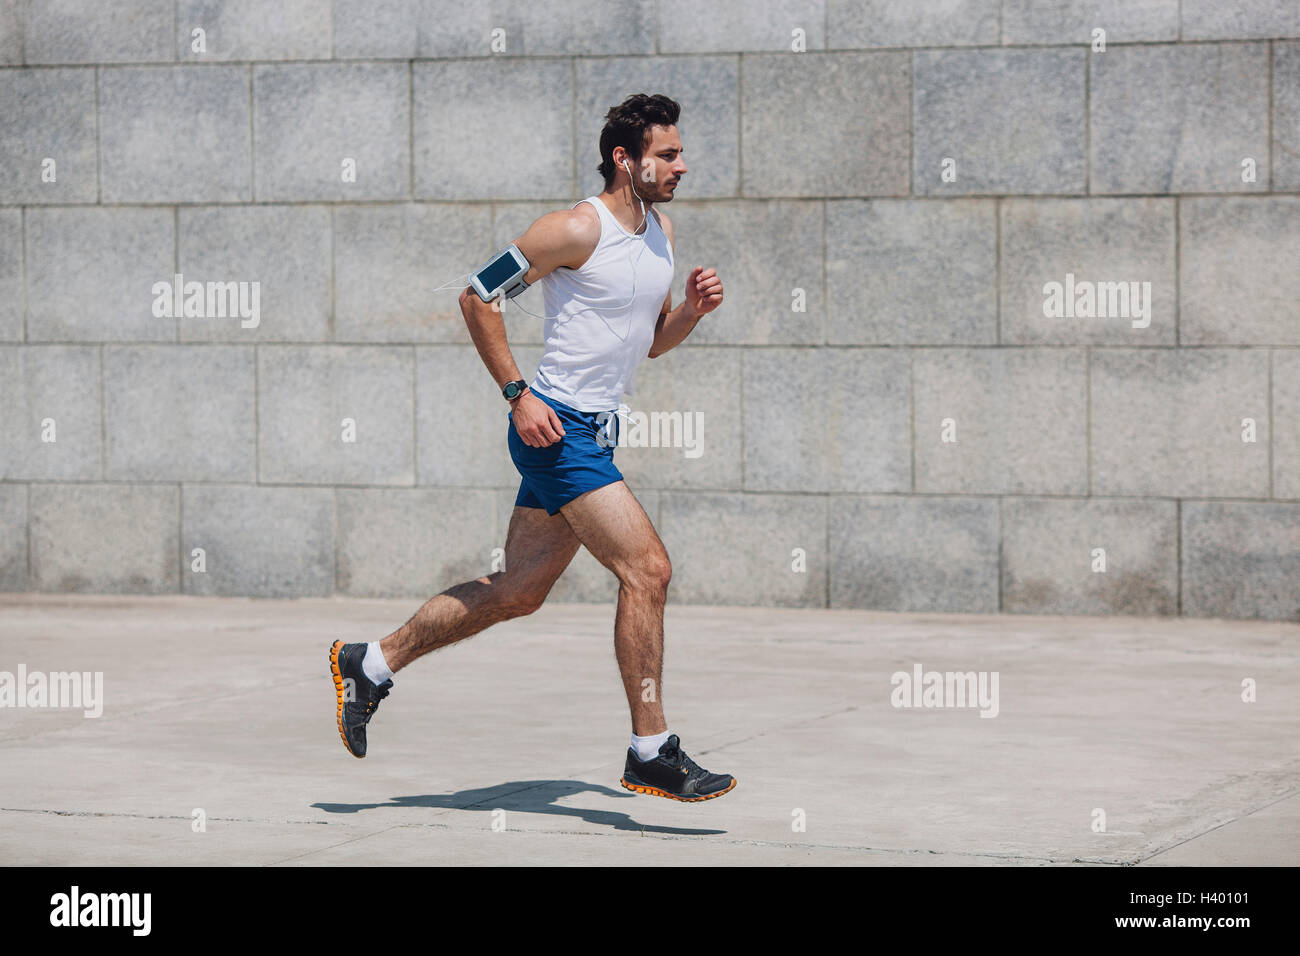 Ermittelten Sportler Joggen auf Bürgersteig von Mauer Stockfoto